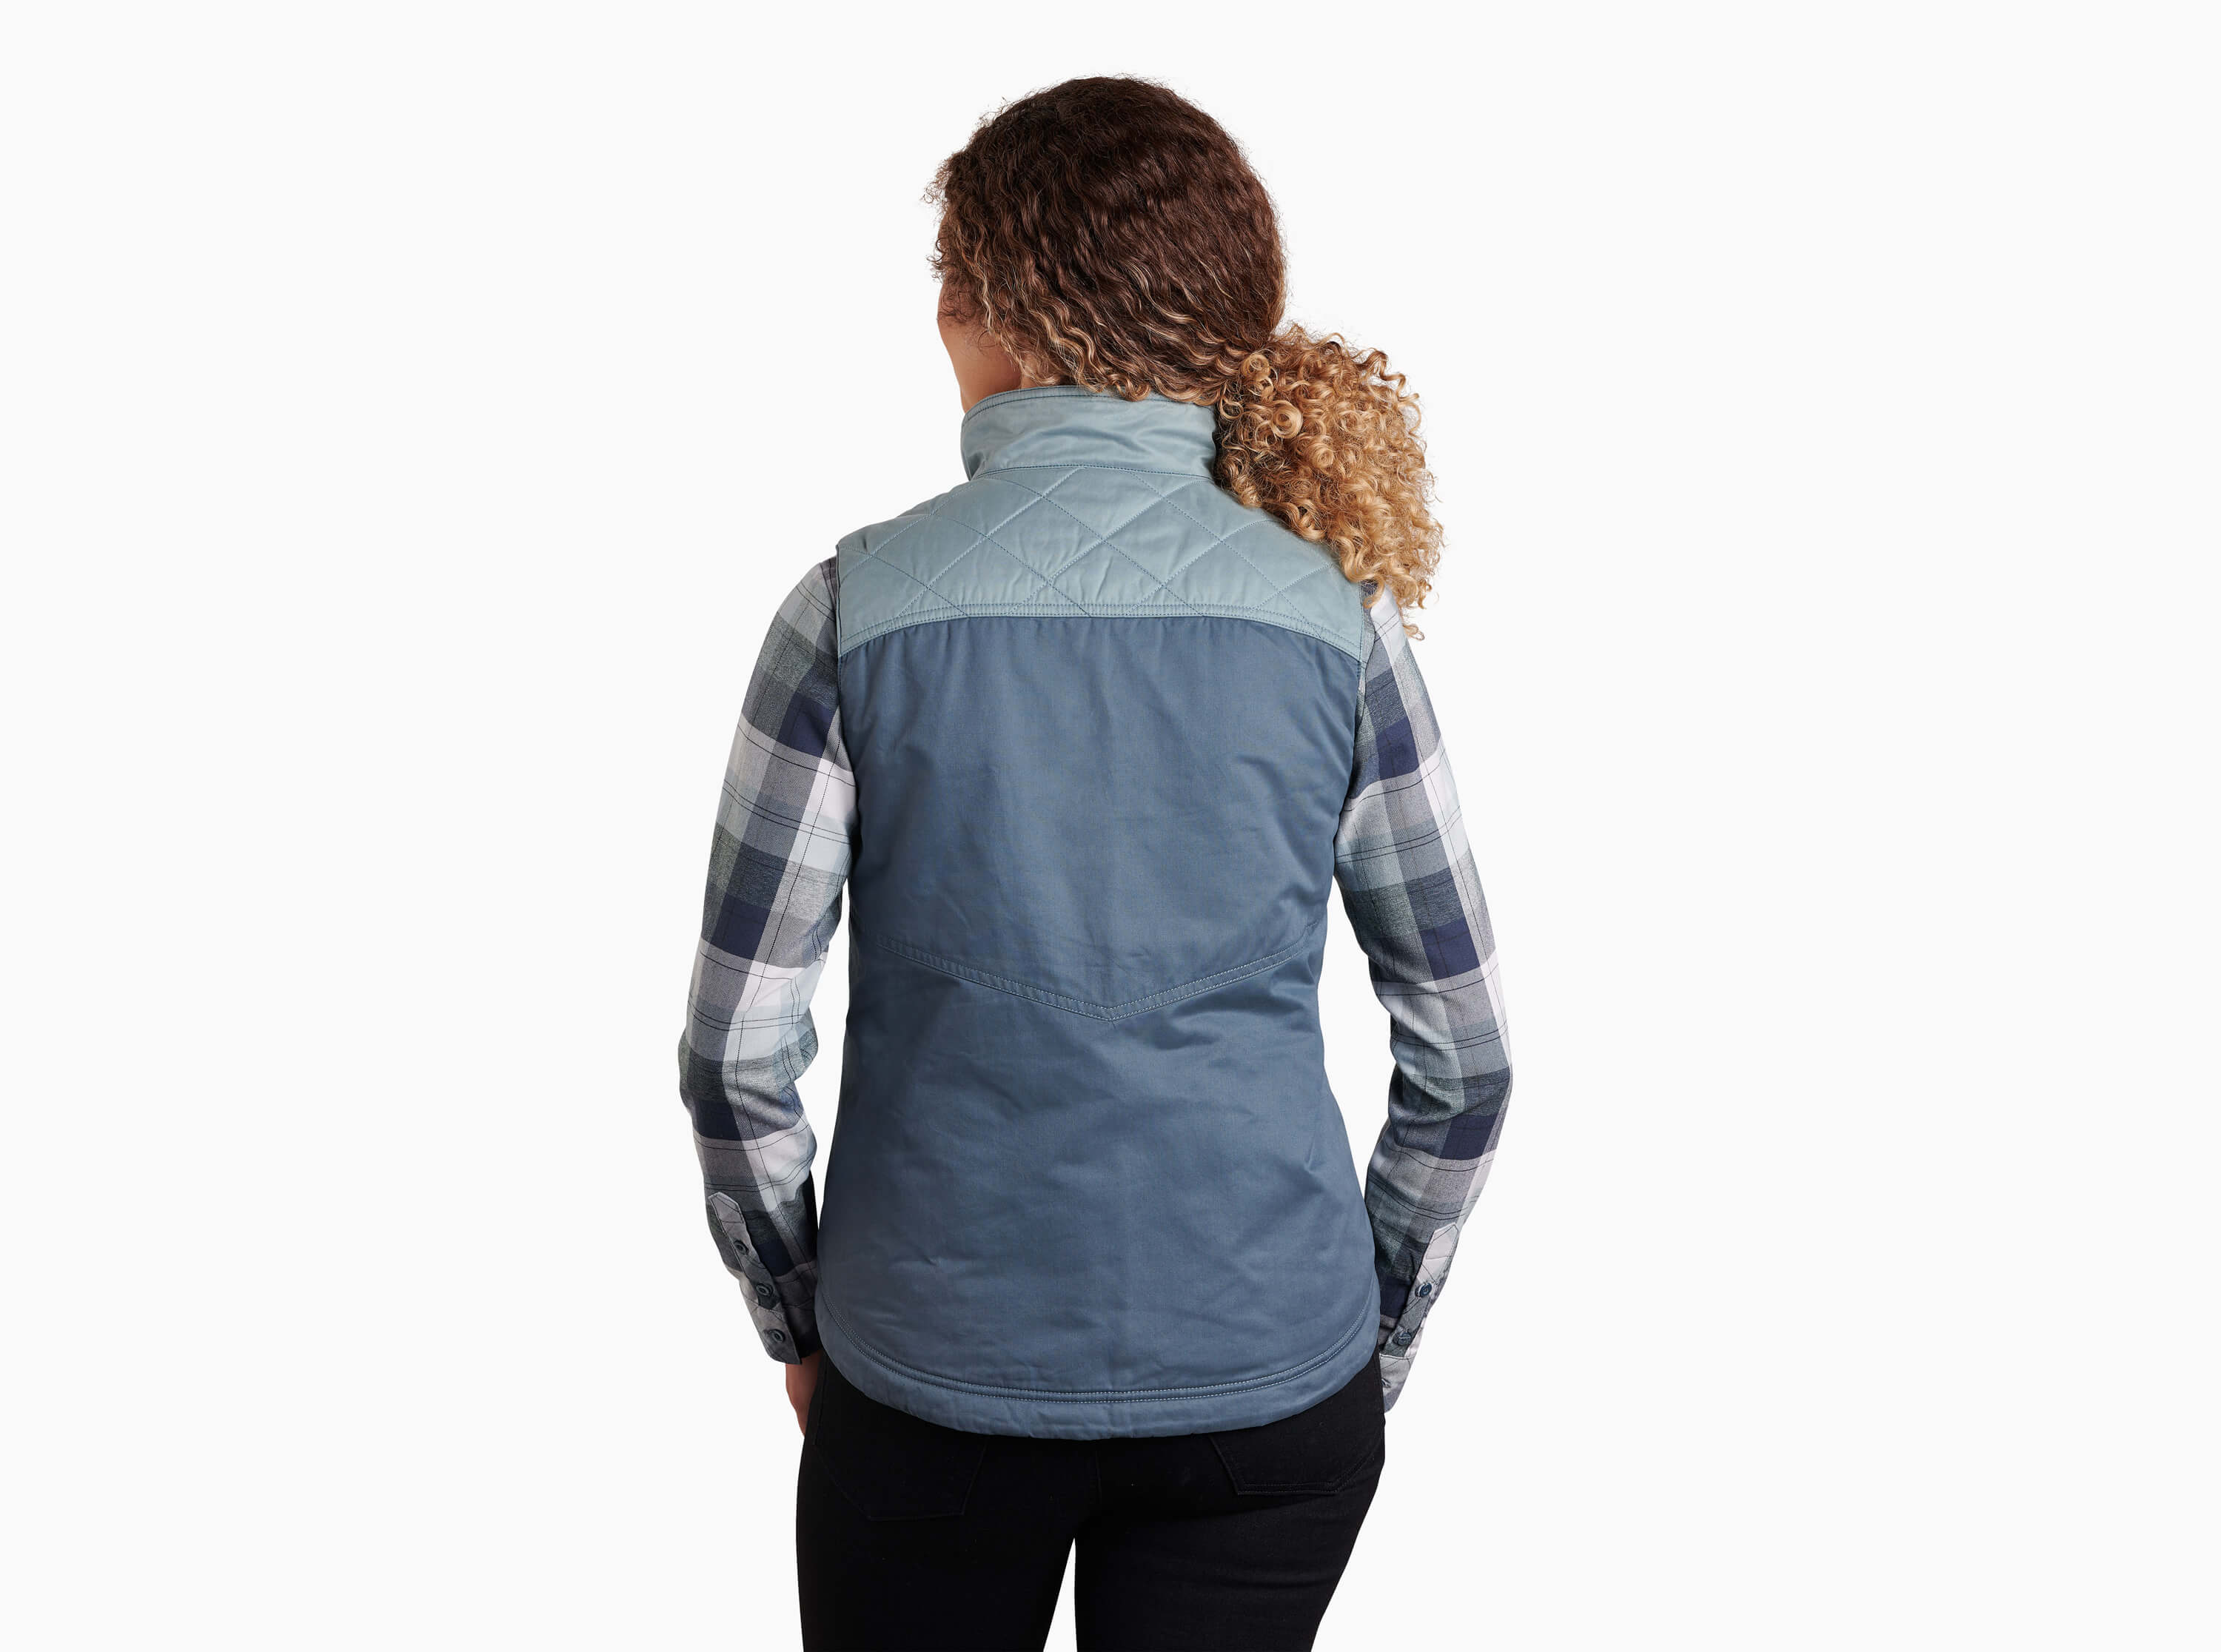 Celeste™ Lined Vest in Women's Outerwear